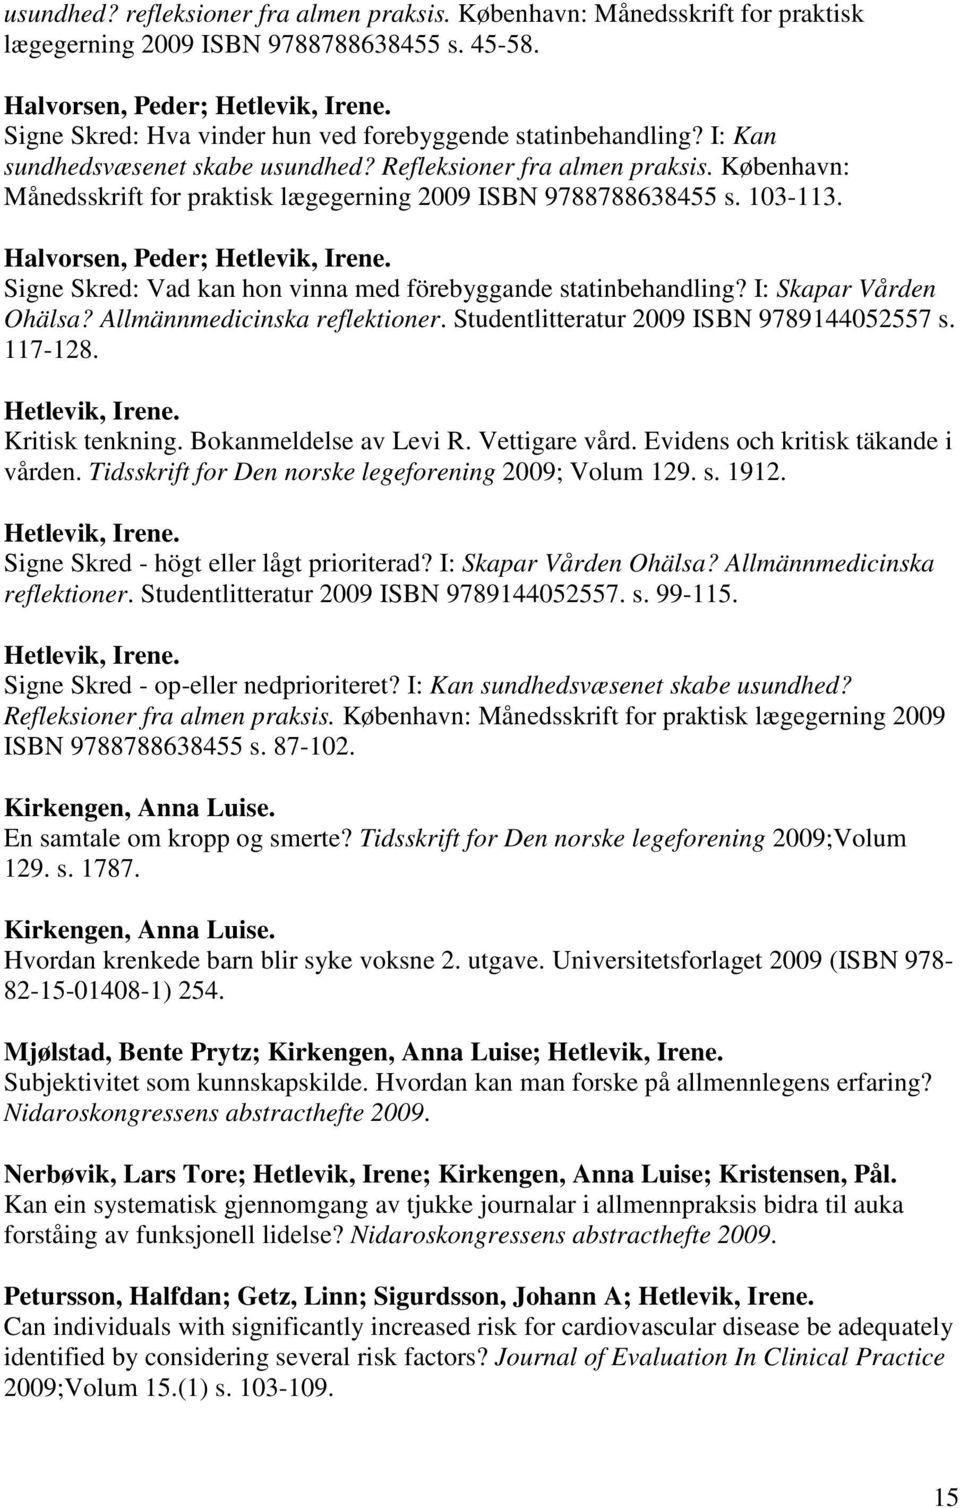 København: Månedsskrift for praktisk lægegerning 2009 ISBN 9788788638455 s. 103-113. Halvorsen, Peder; Hetlevik, Irene. Signe Skred: Vad kan hon vinna med förebyggande statinbehandling?